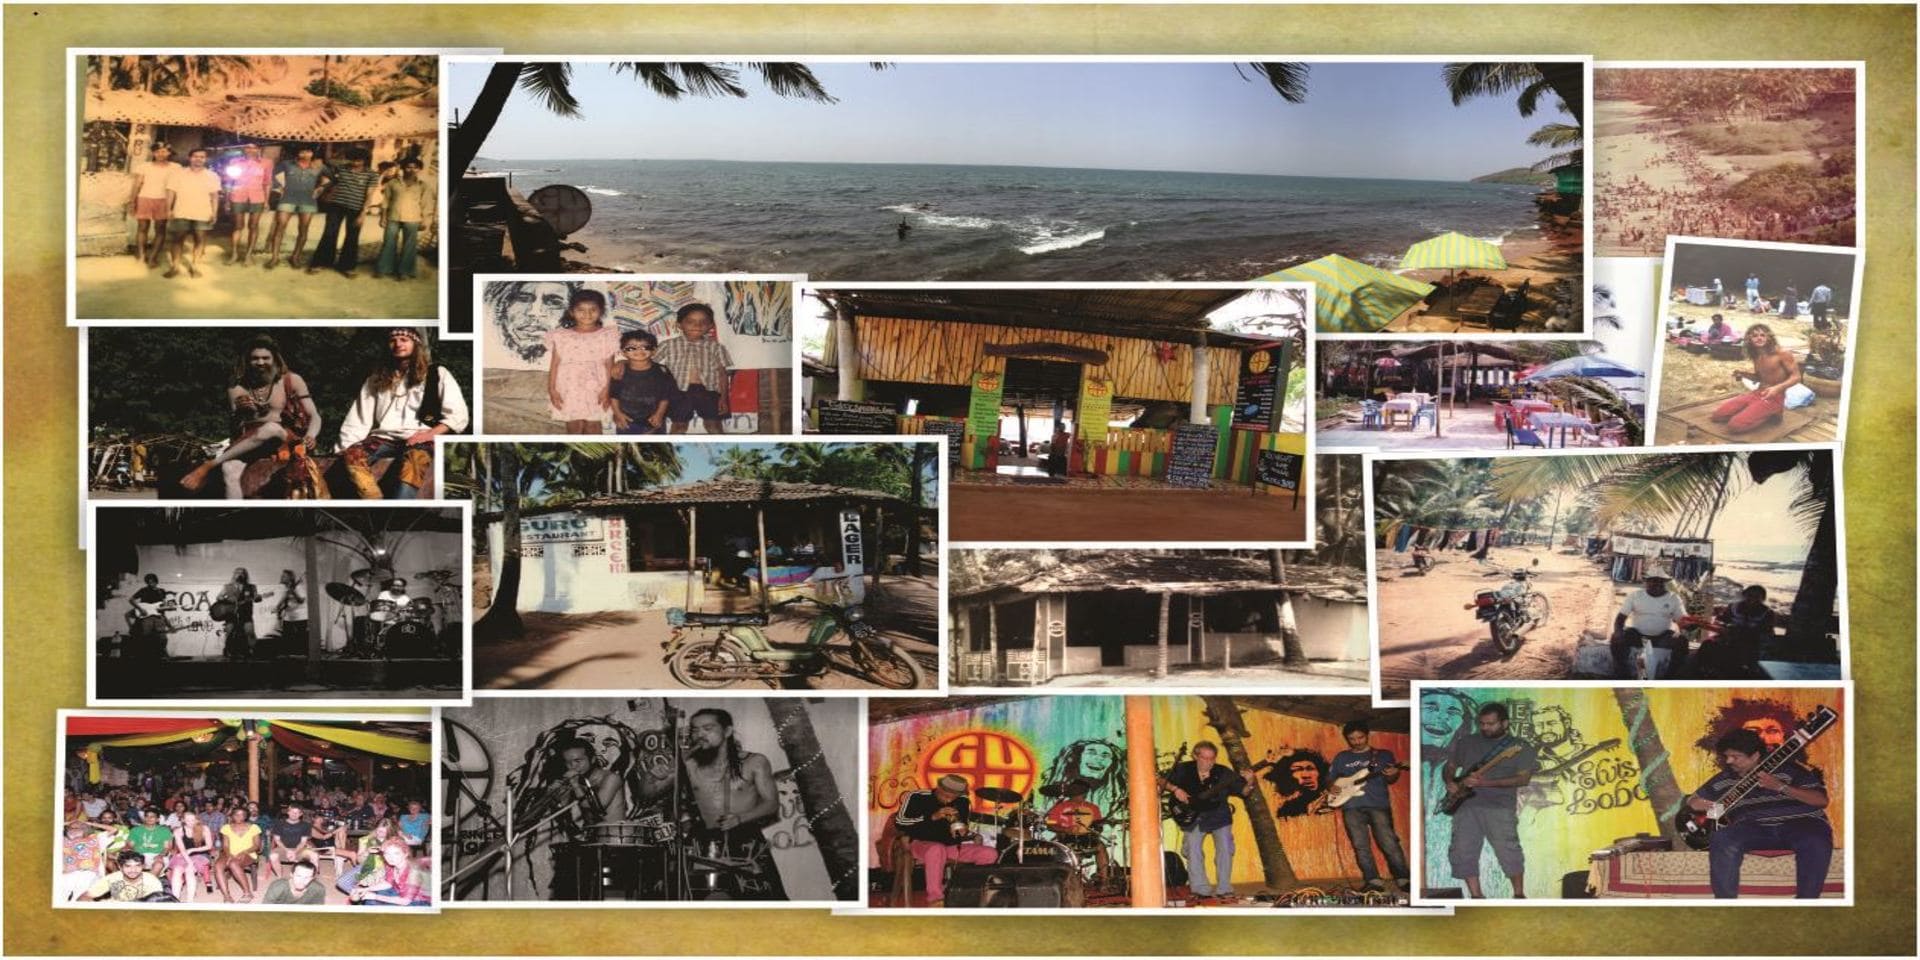 anjuna music, anjuna label,  anjuna beach, anjuna goa, anjuna meaning, anjuna restaurants, anjuna beach party, anjuna beach resort